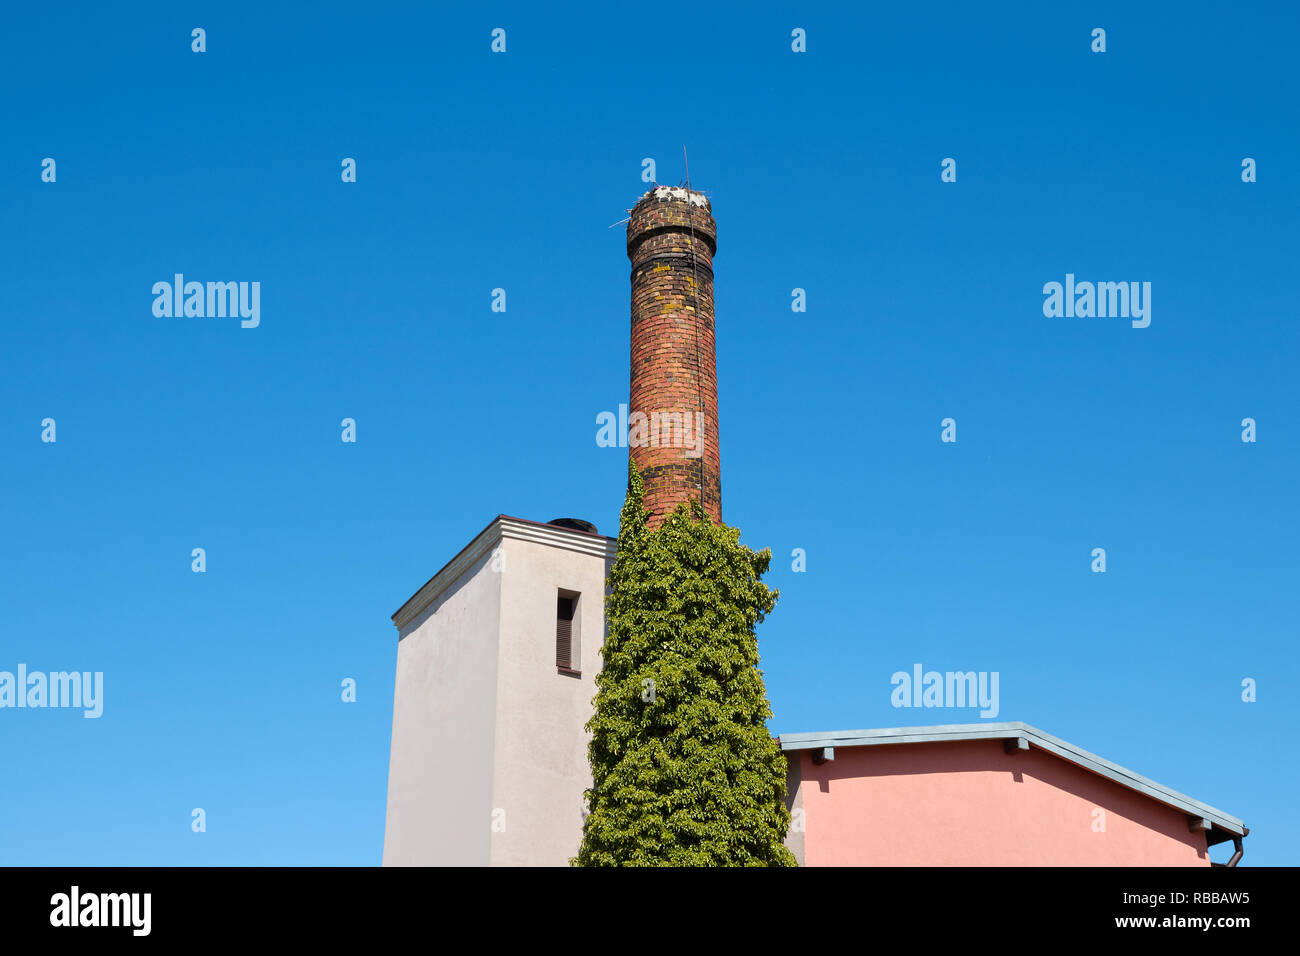 Antigua chimenea de ladrillo contra el azul cielo despejado. Foto de stock